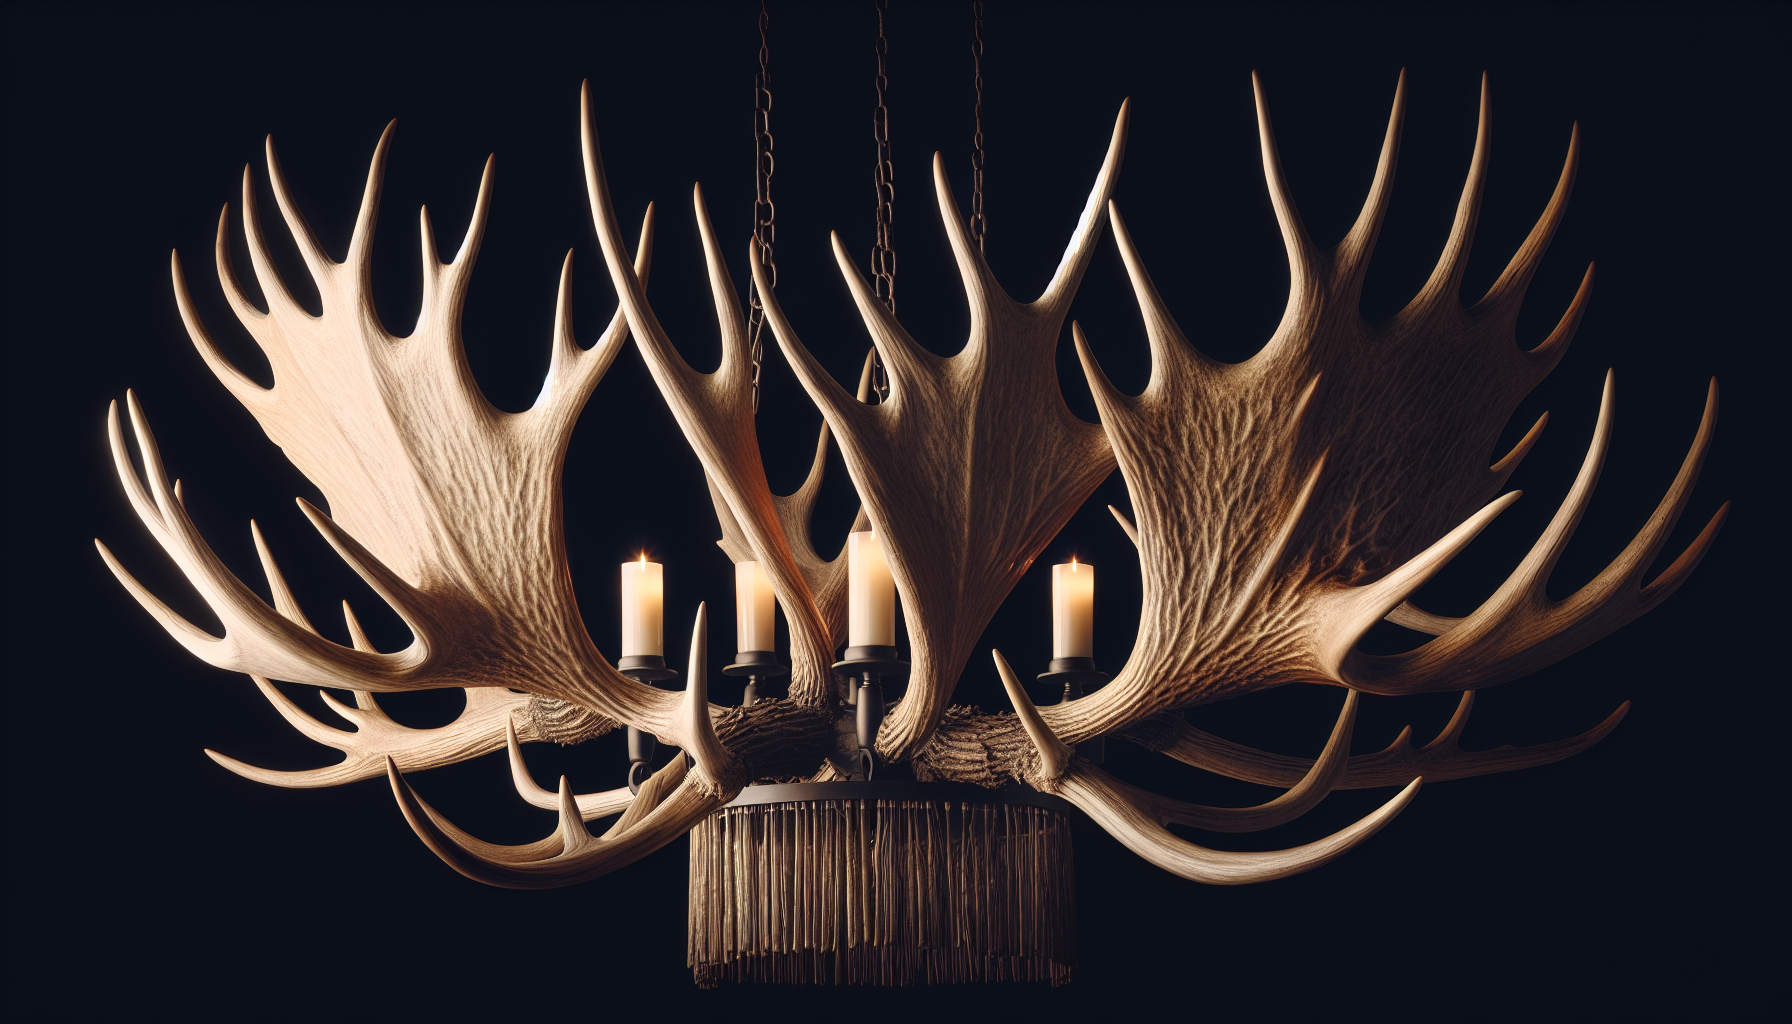 Moose antler chandelier design